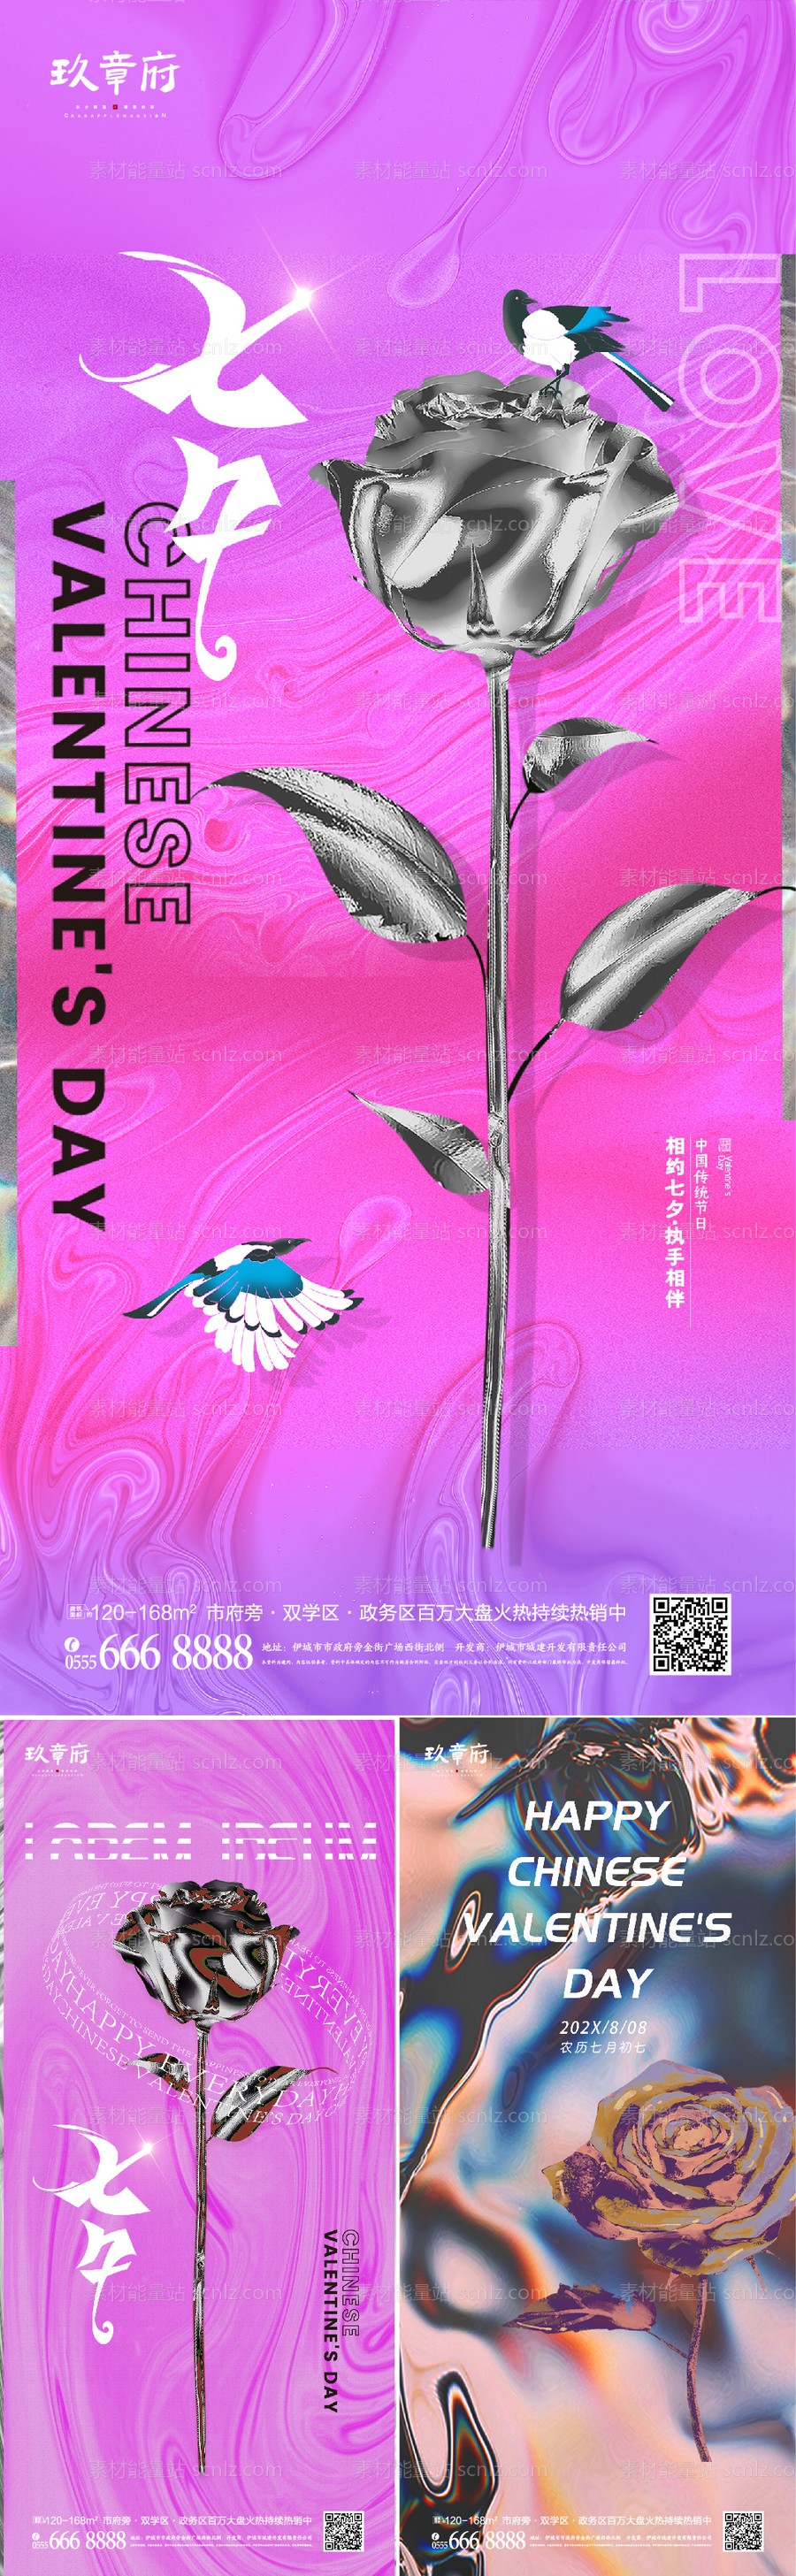 素材能量站-七夕情人节创意系列海报